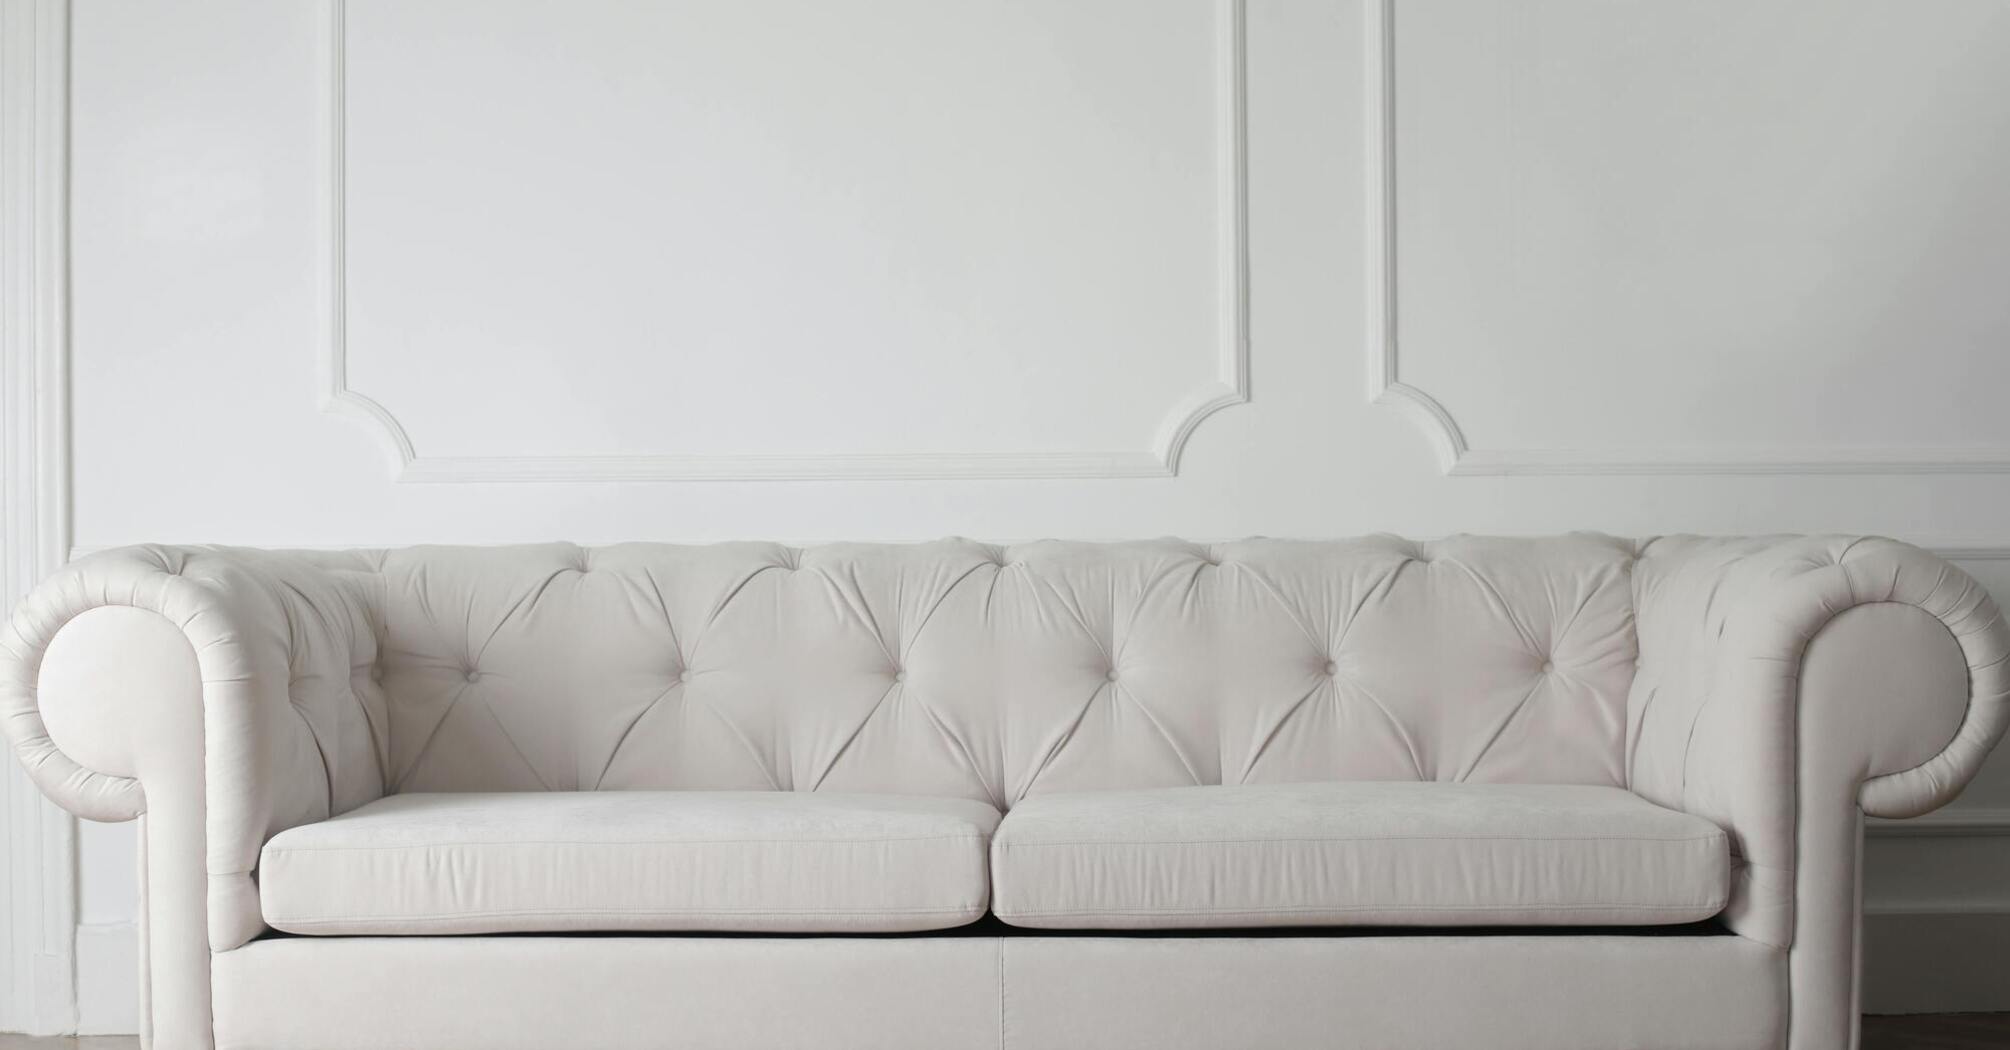 Як обрати ідеальний диван для будинку: 3 цікавих лайфхаки